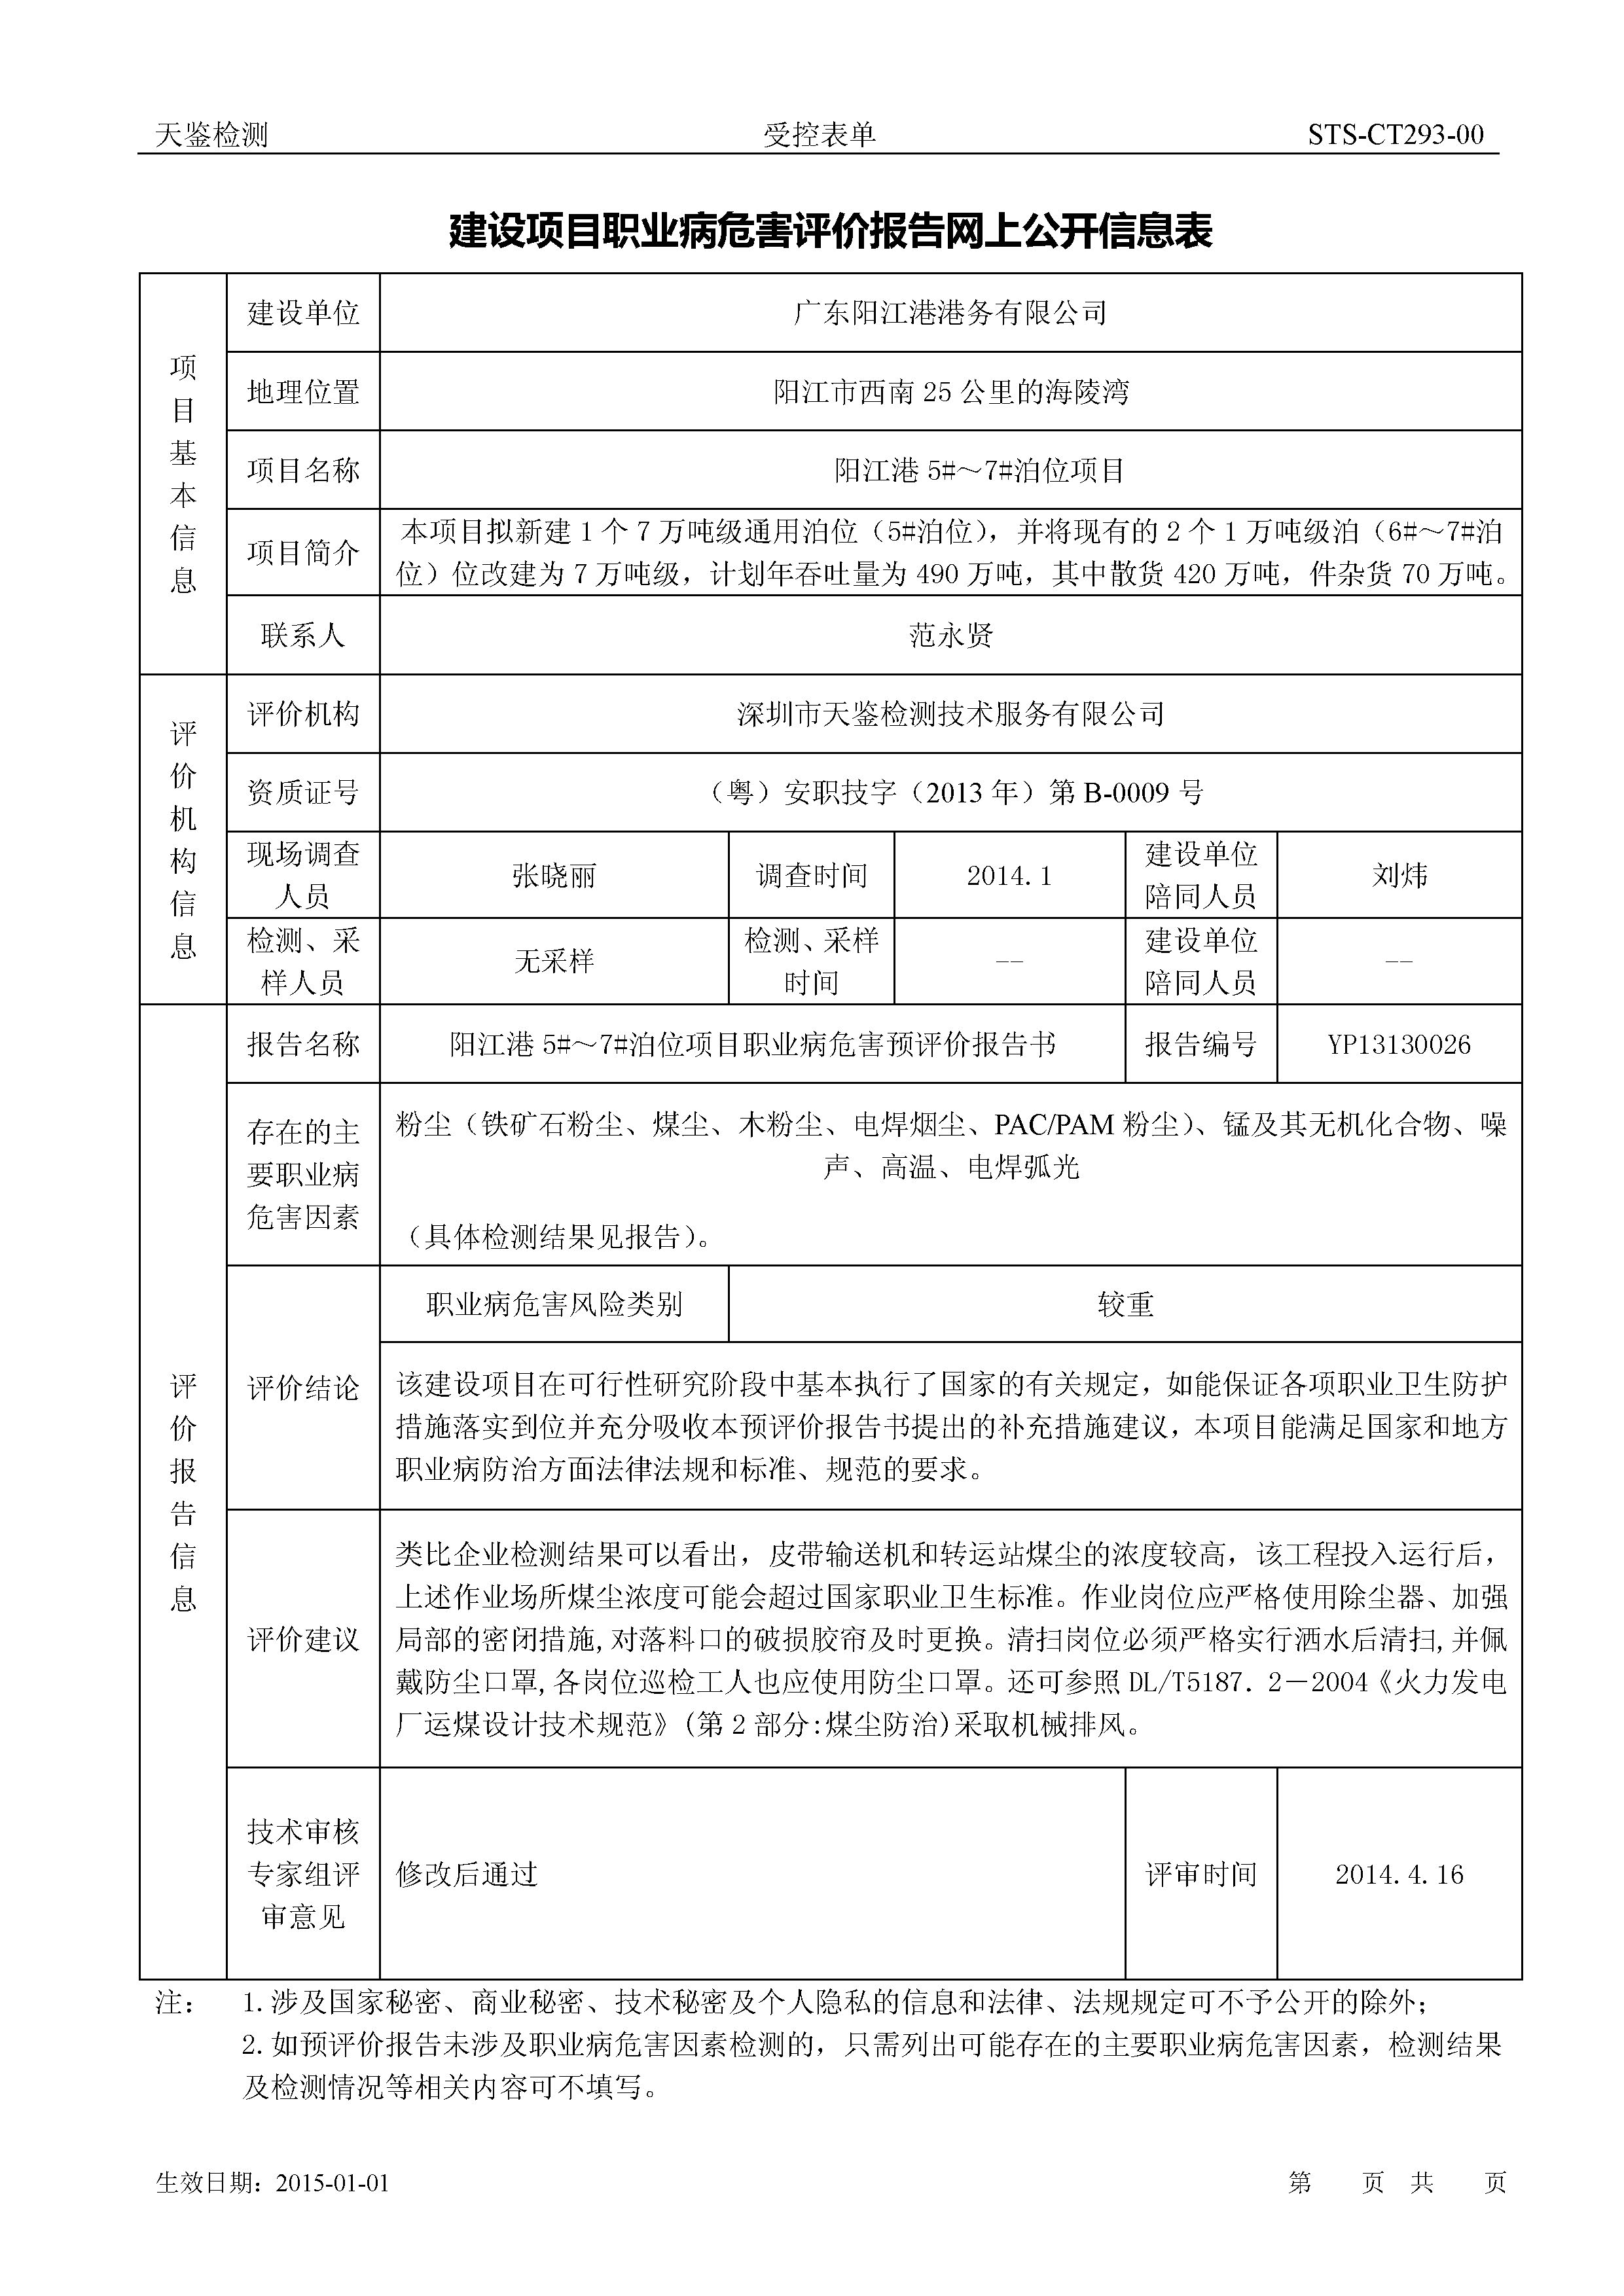 广东阳江港港务有限公司 阳江港 建设项目职业病危害预评价报告网上公开信息表